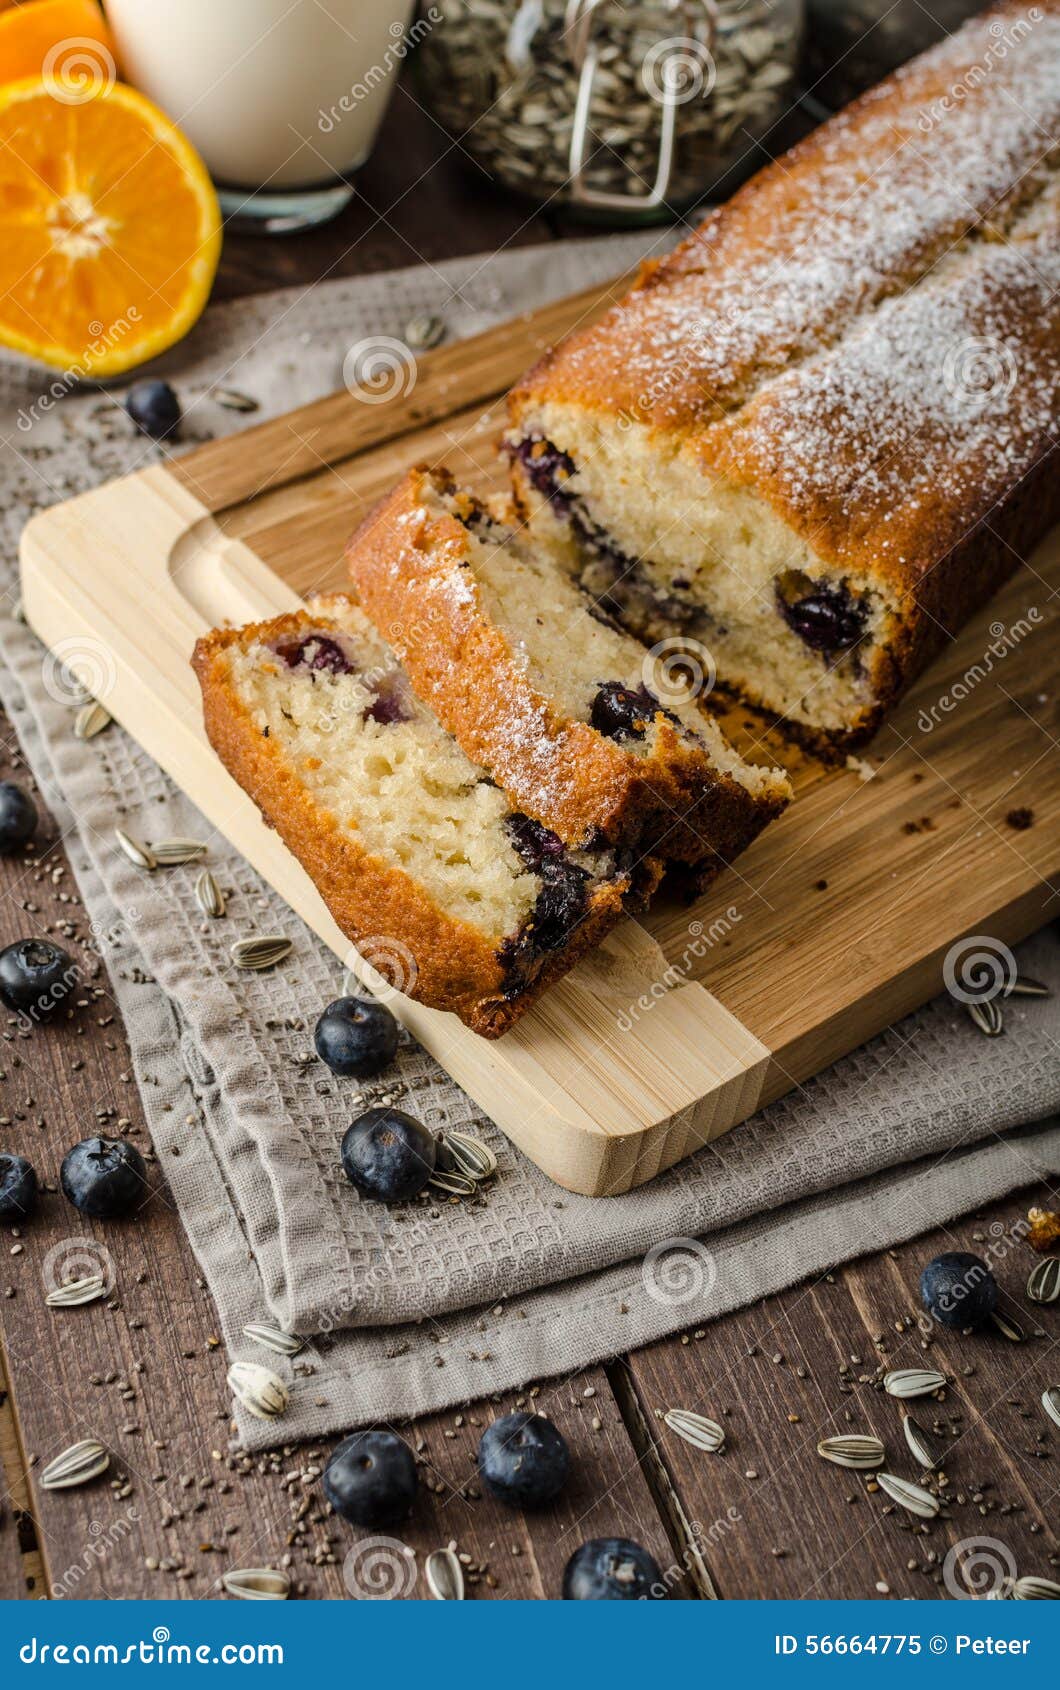 【春游美食】紫薯卷面包和花式豆沙面包 蓝莓果酱面包_蓝莓果酱面包_江家厨房的日志_美食天下